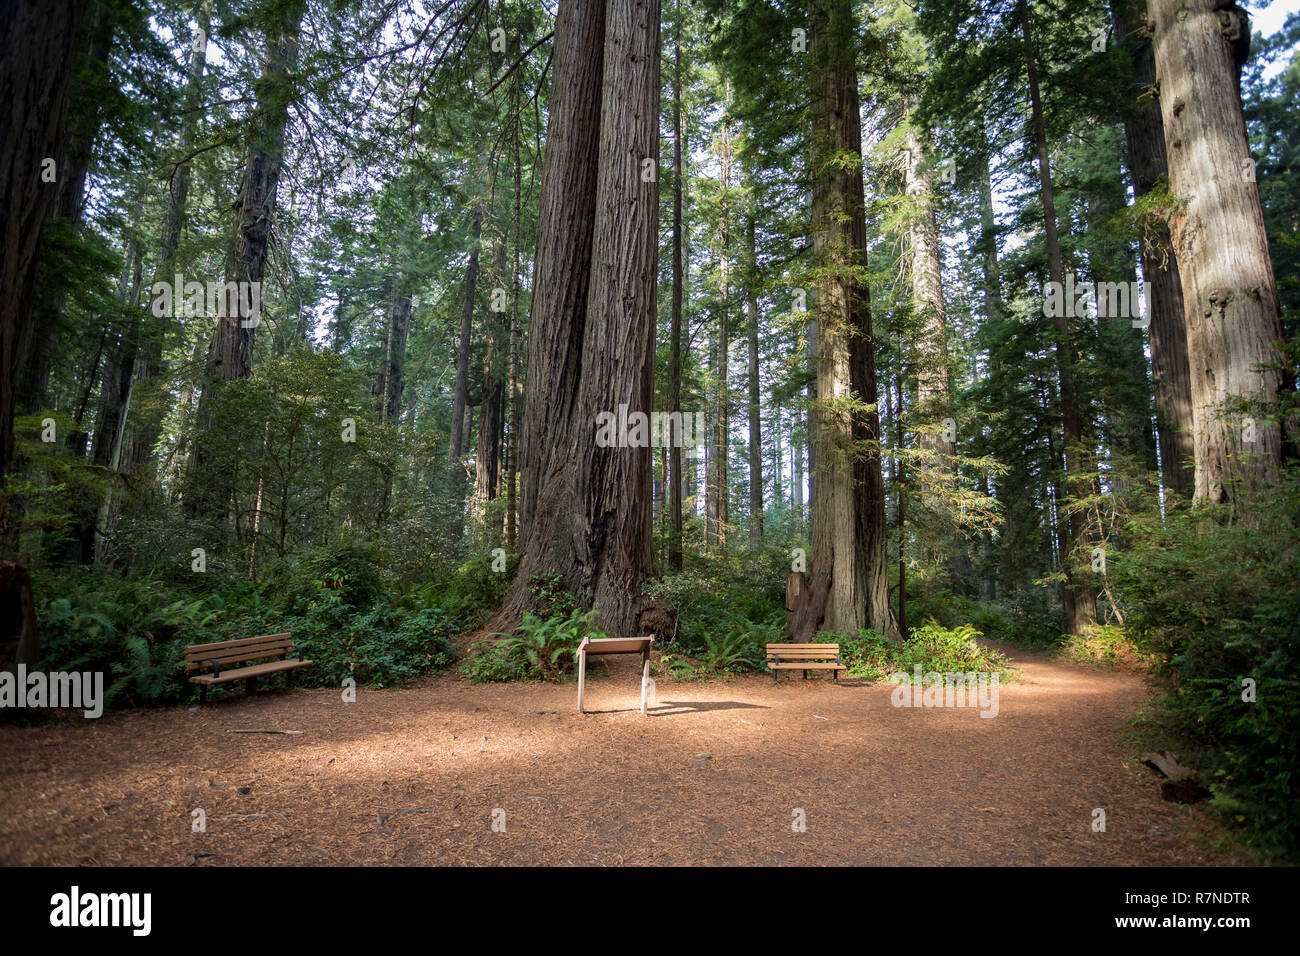 Des sentiers de randonnée au Sentier Lady Bird Johnson Grove en Californie Redwoods National Park et des parcs d'État. Banque D'Images